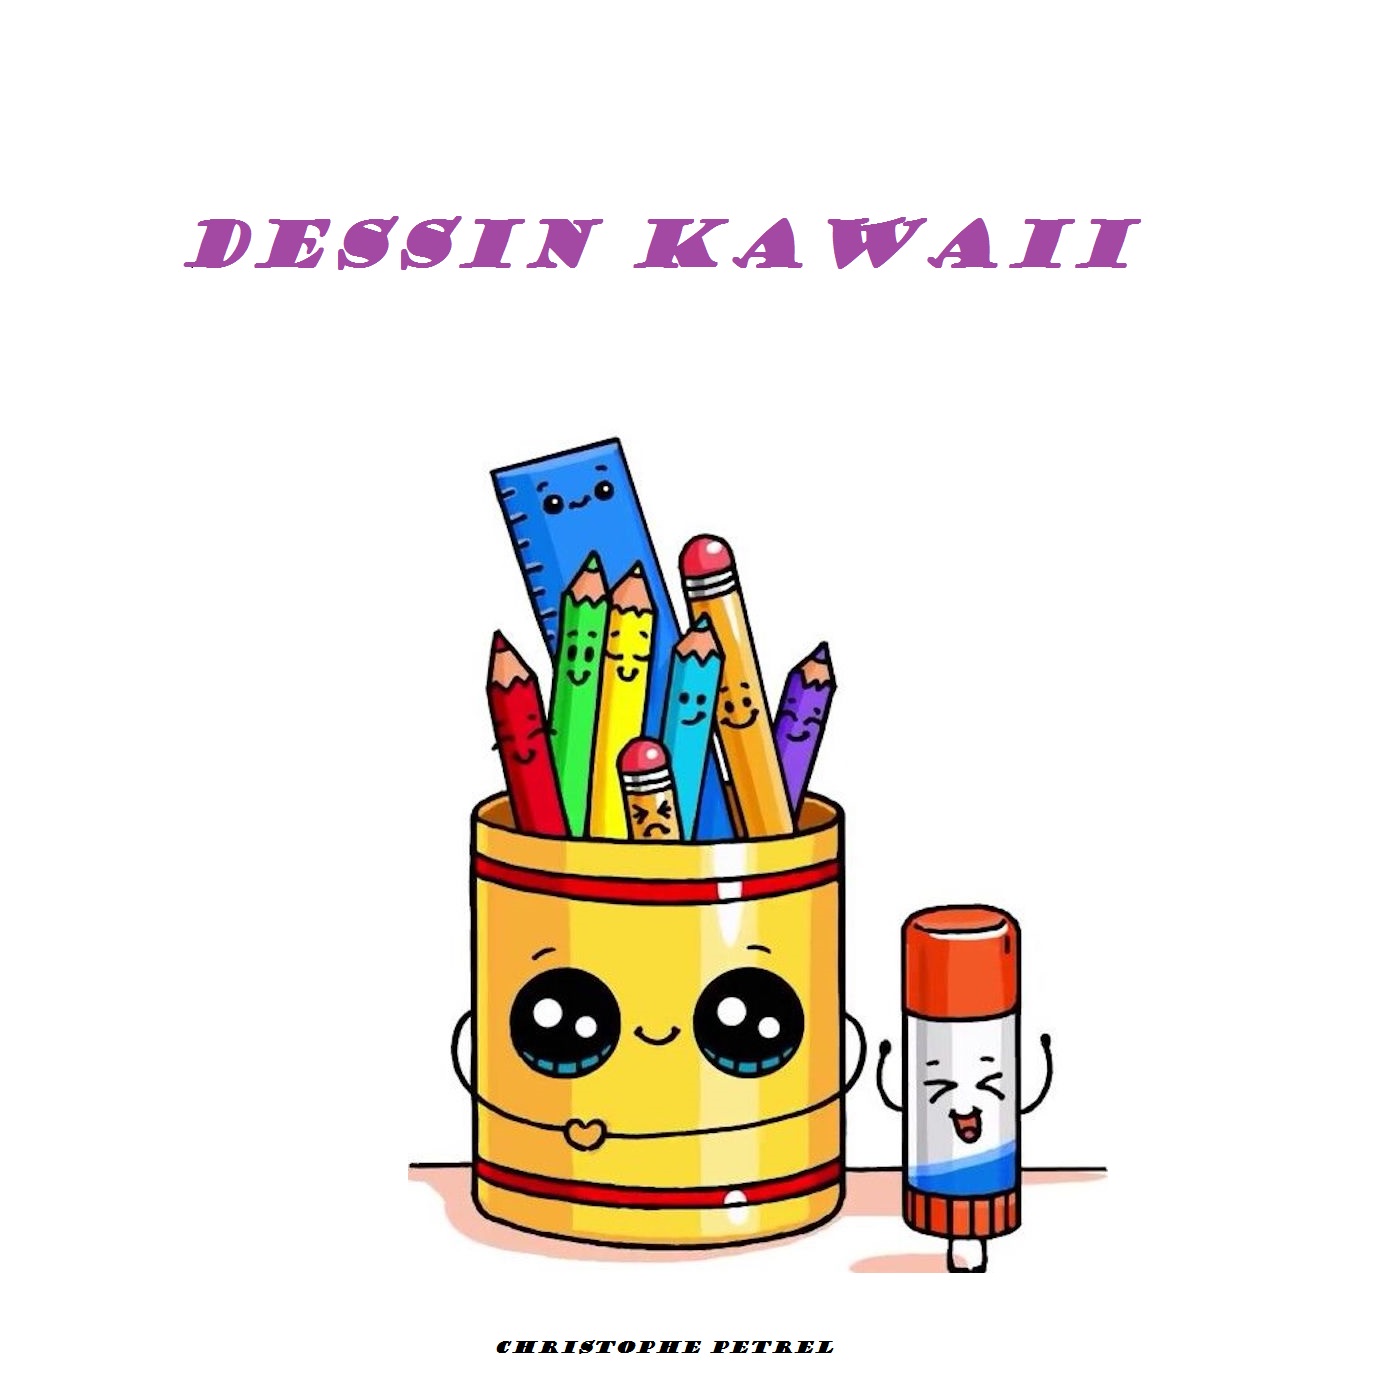 Cliquez ici pour Commander ici votre Livre kawaii de dessin kawaii facile